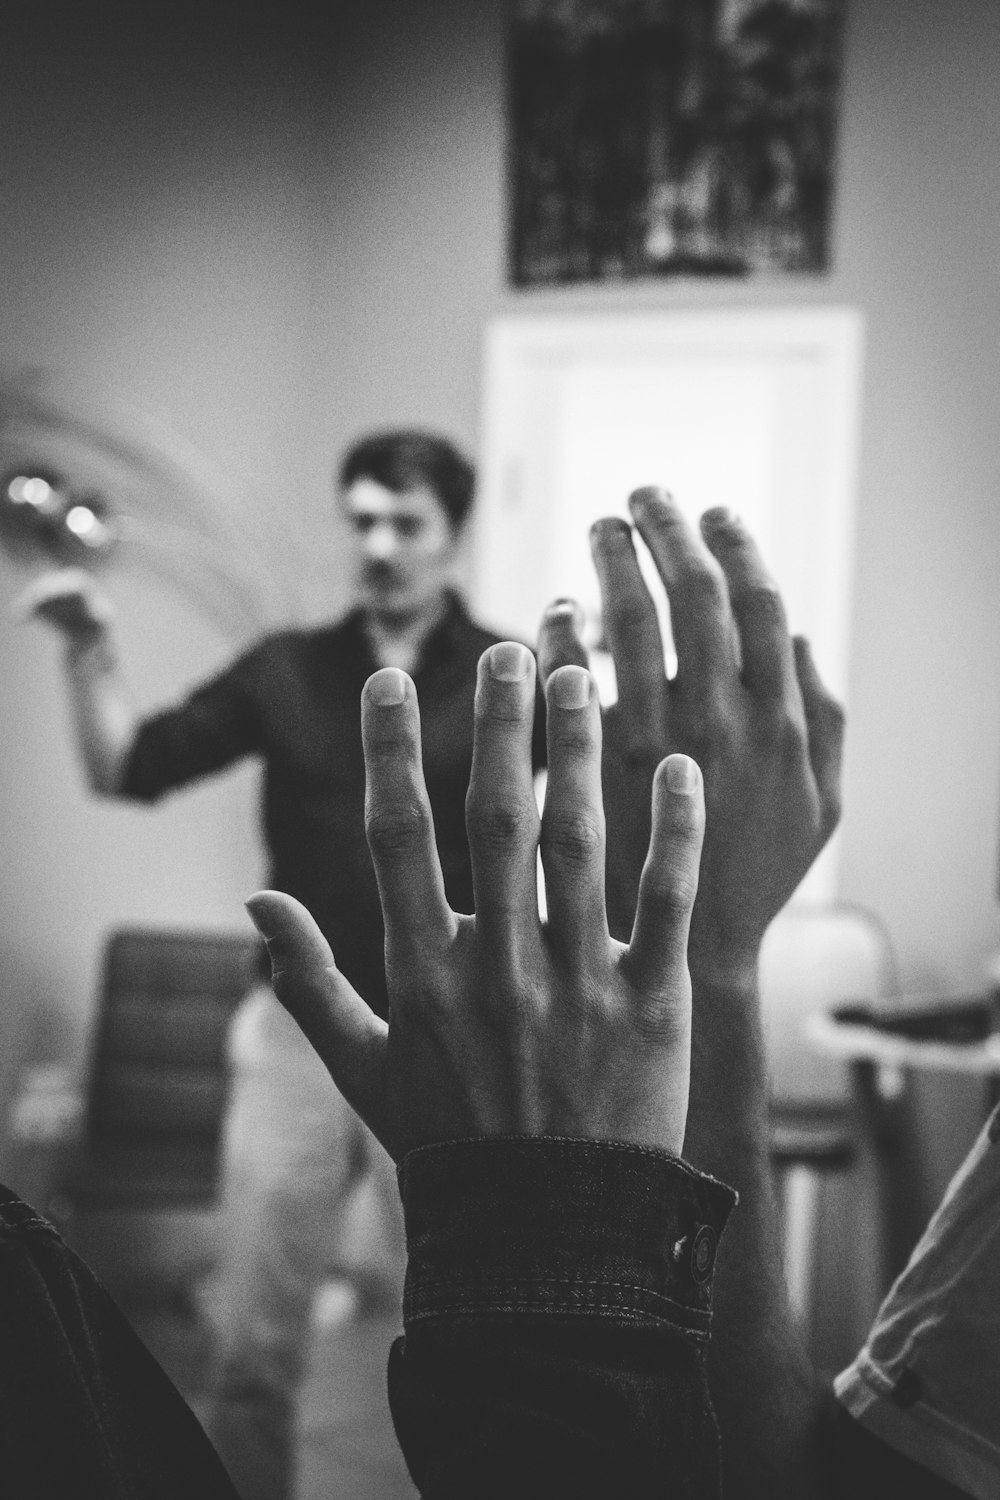 fotografia em tons de cinza de duas pessoas levantando as mãos